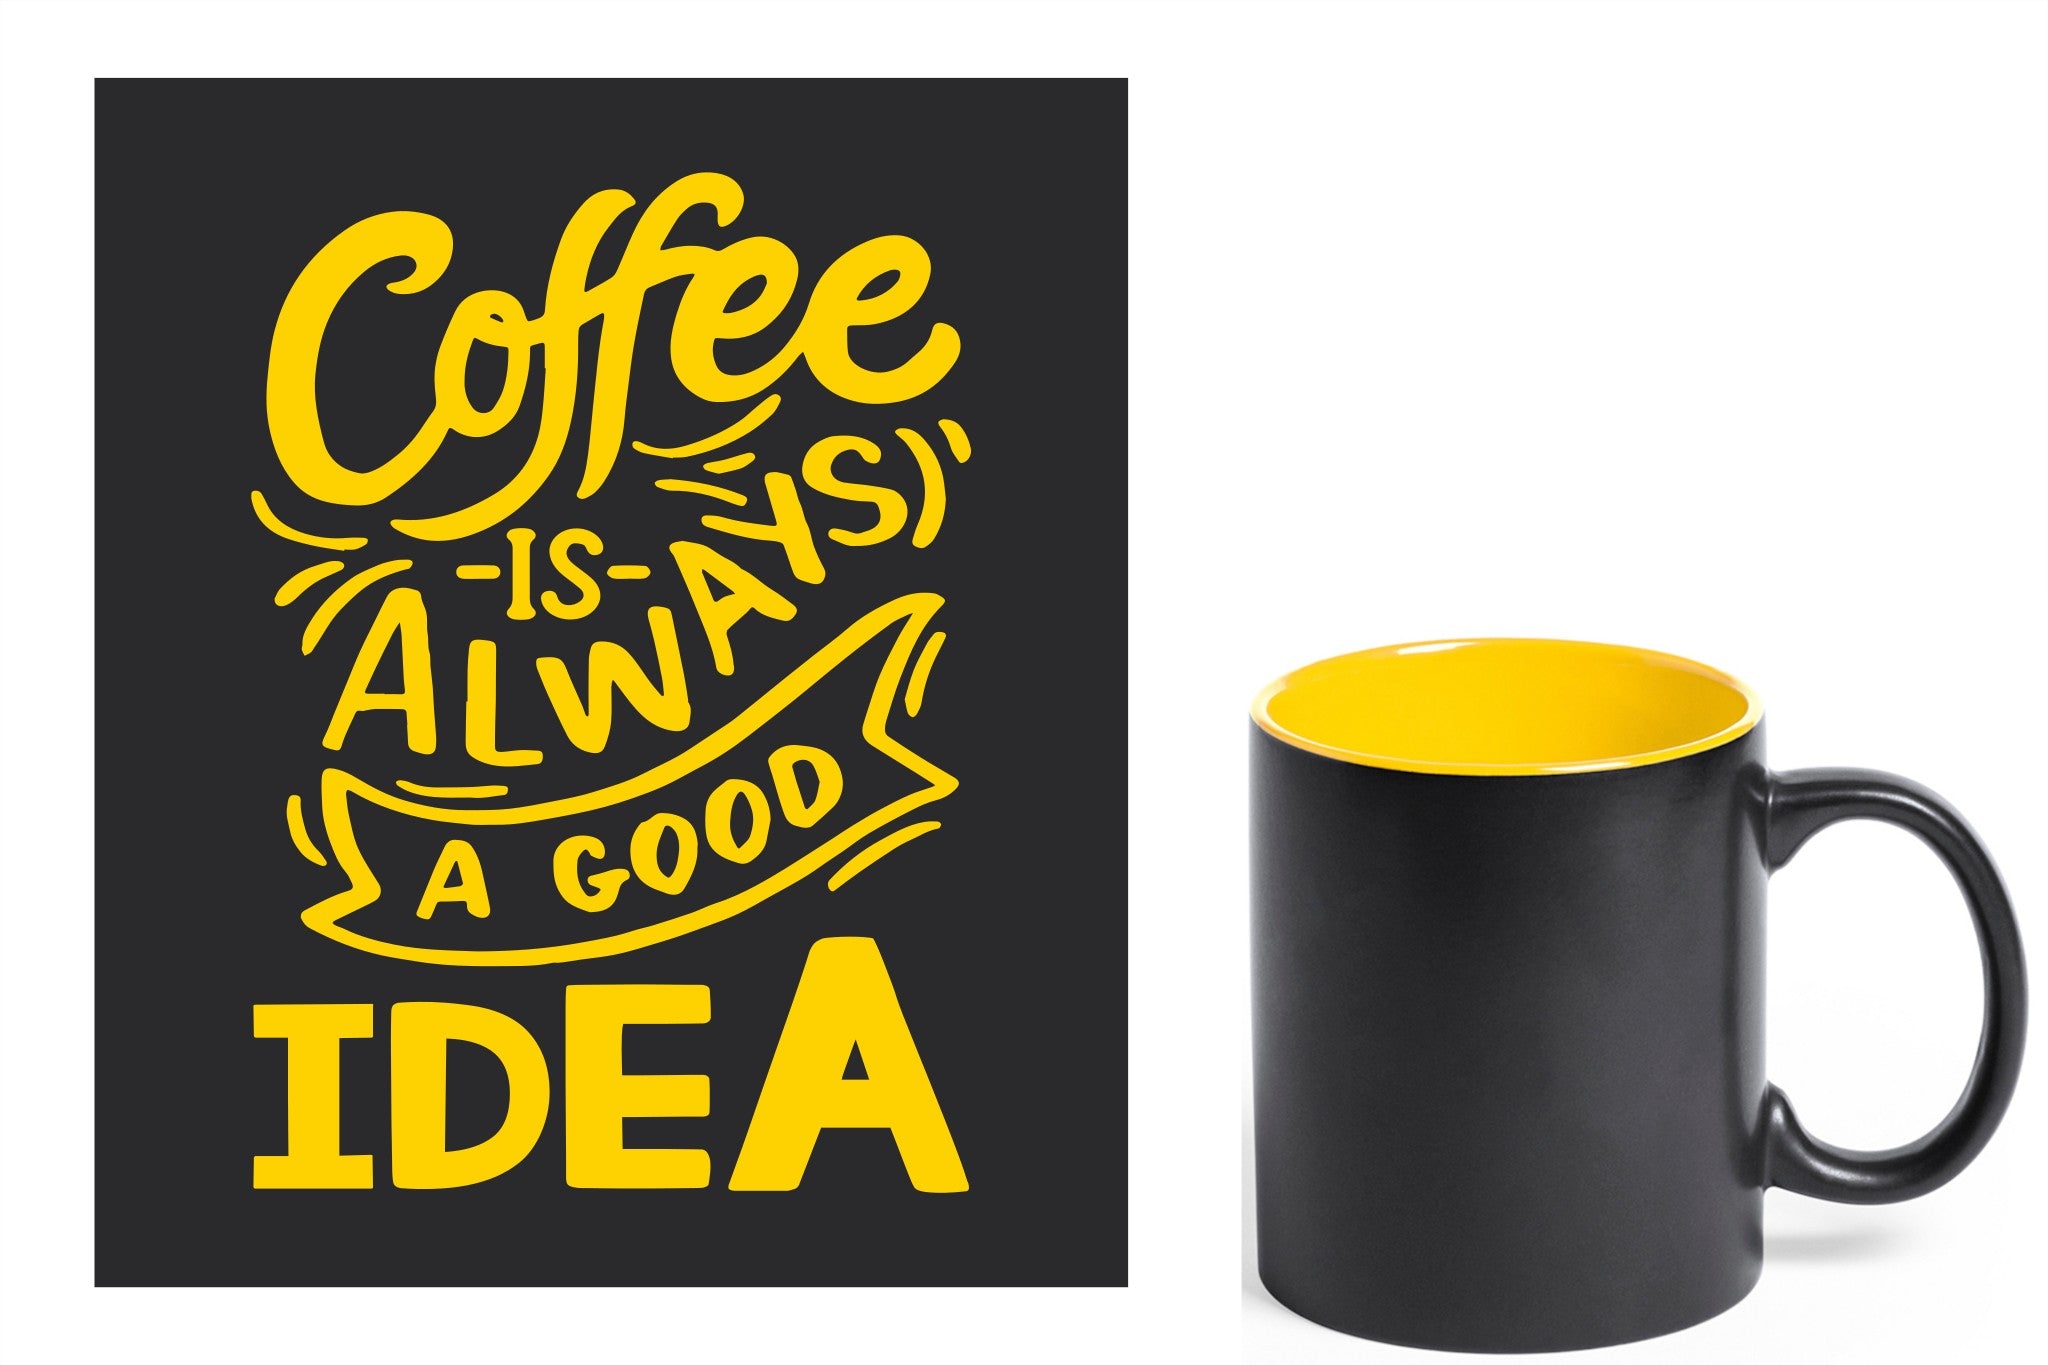 zwarte keramische mok met gele gravure  'Coffee is always a good idea'.